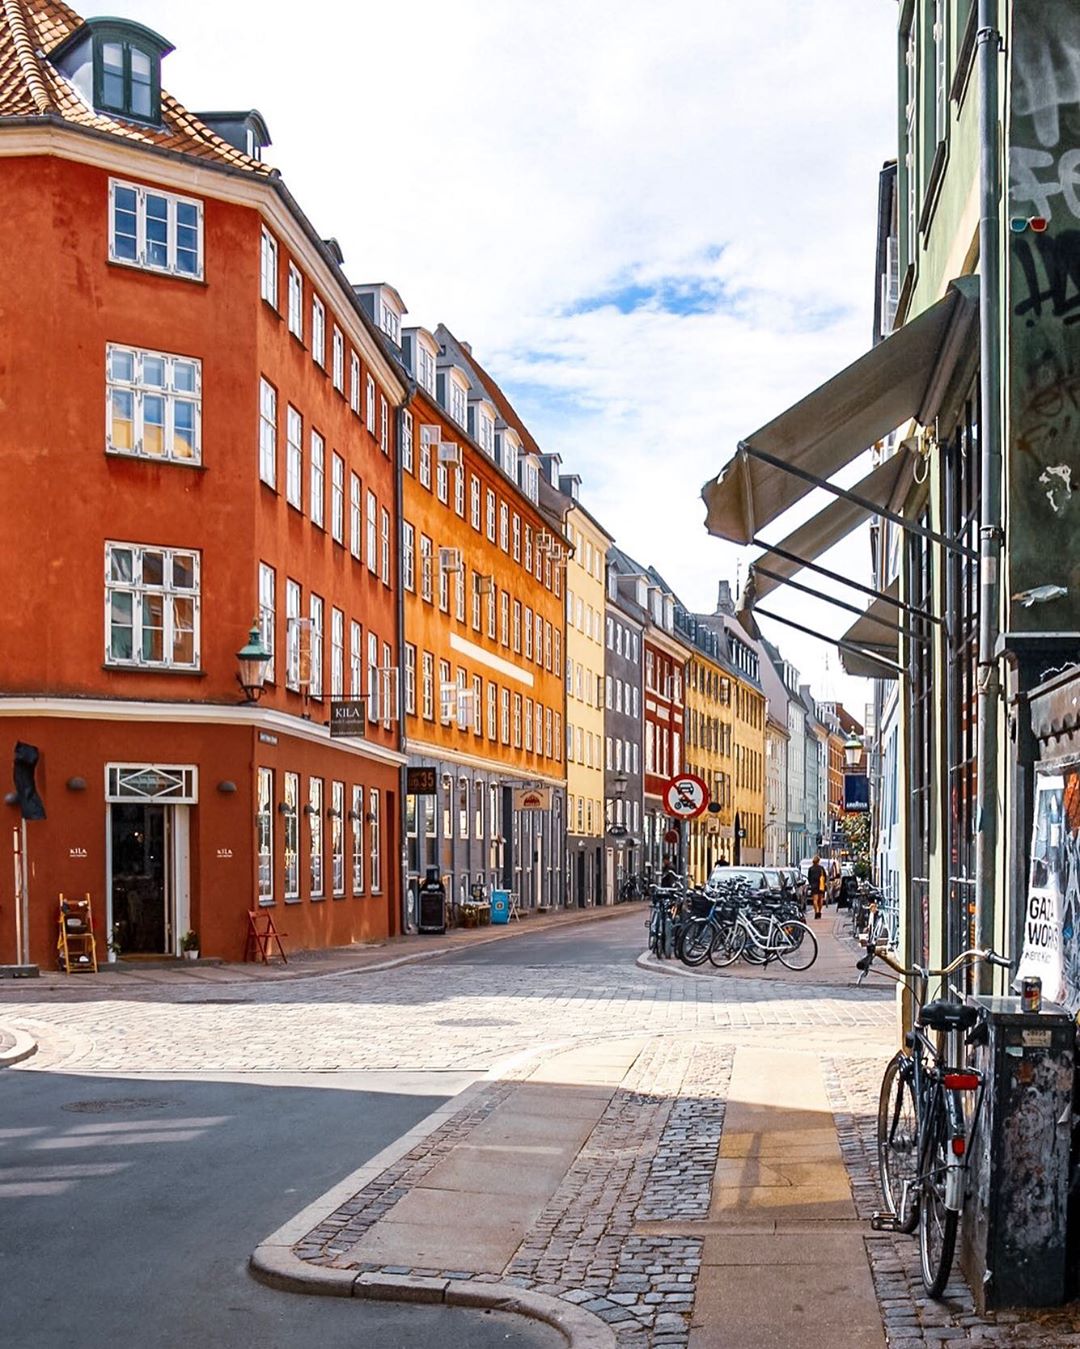 Архитектура и улицы Дании на снимках Адама Бросбеля